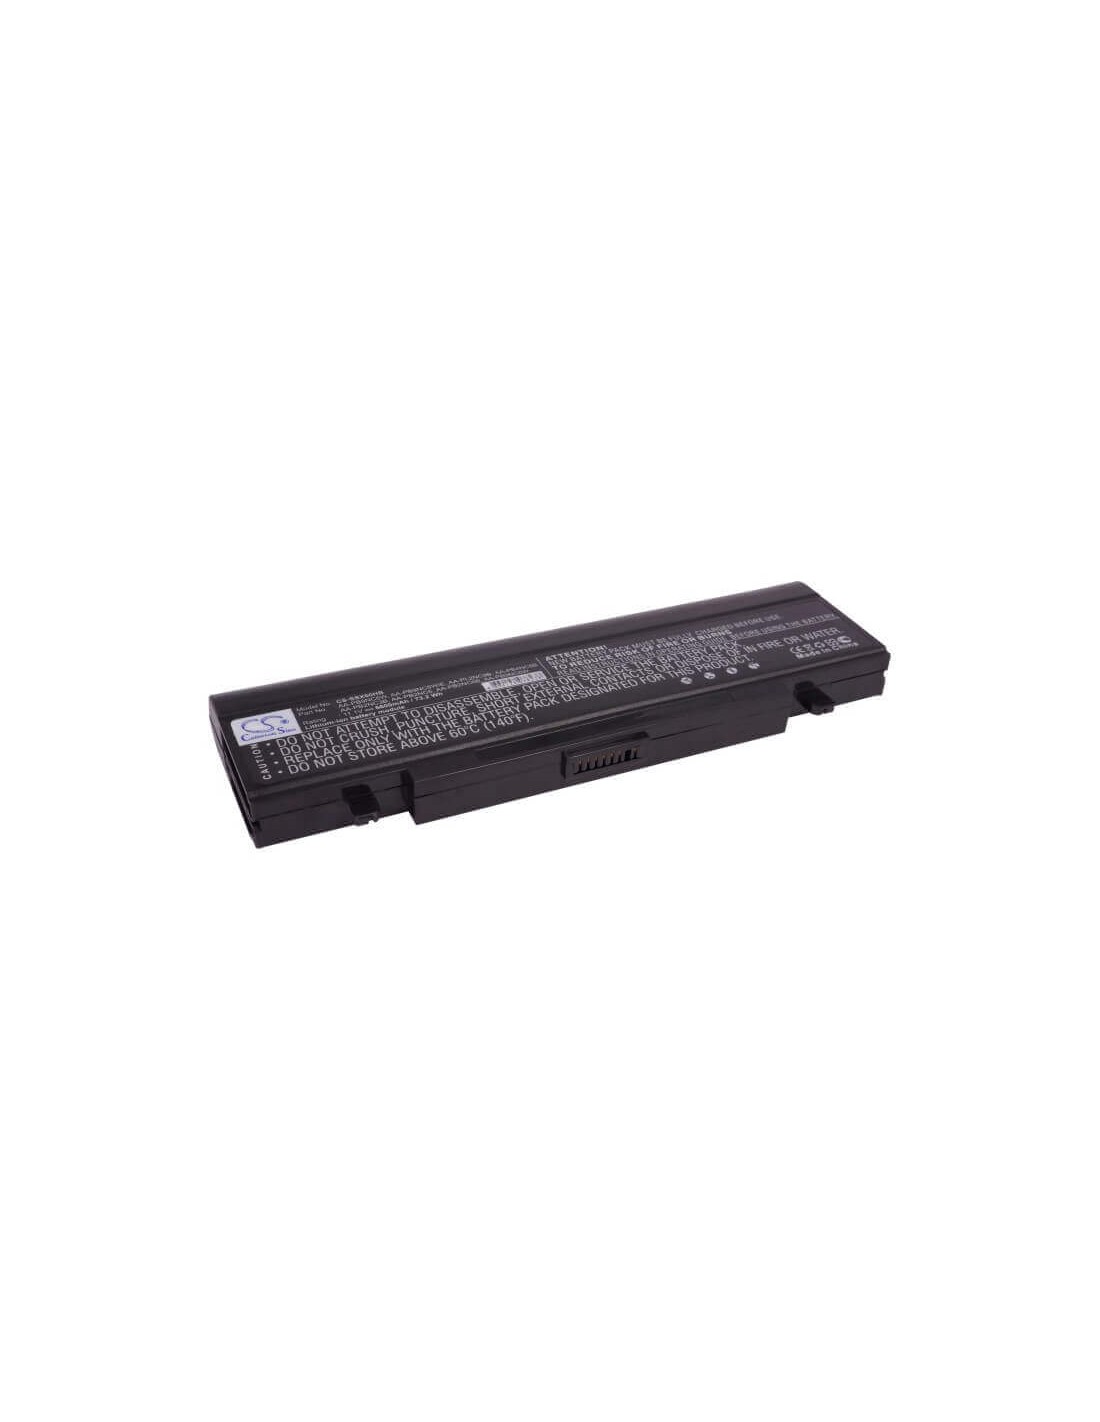 Black Battery for Samsung M60 Aura T5450 Chartiz, M60 Aura T7500 Calipa, M60 Aura T7500 Cruza 11.1V, 6600mAh - 73.26Wh